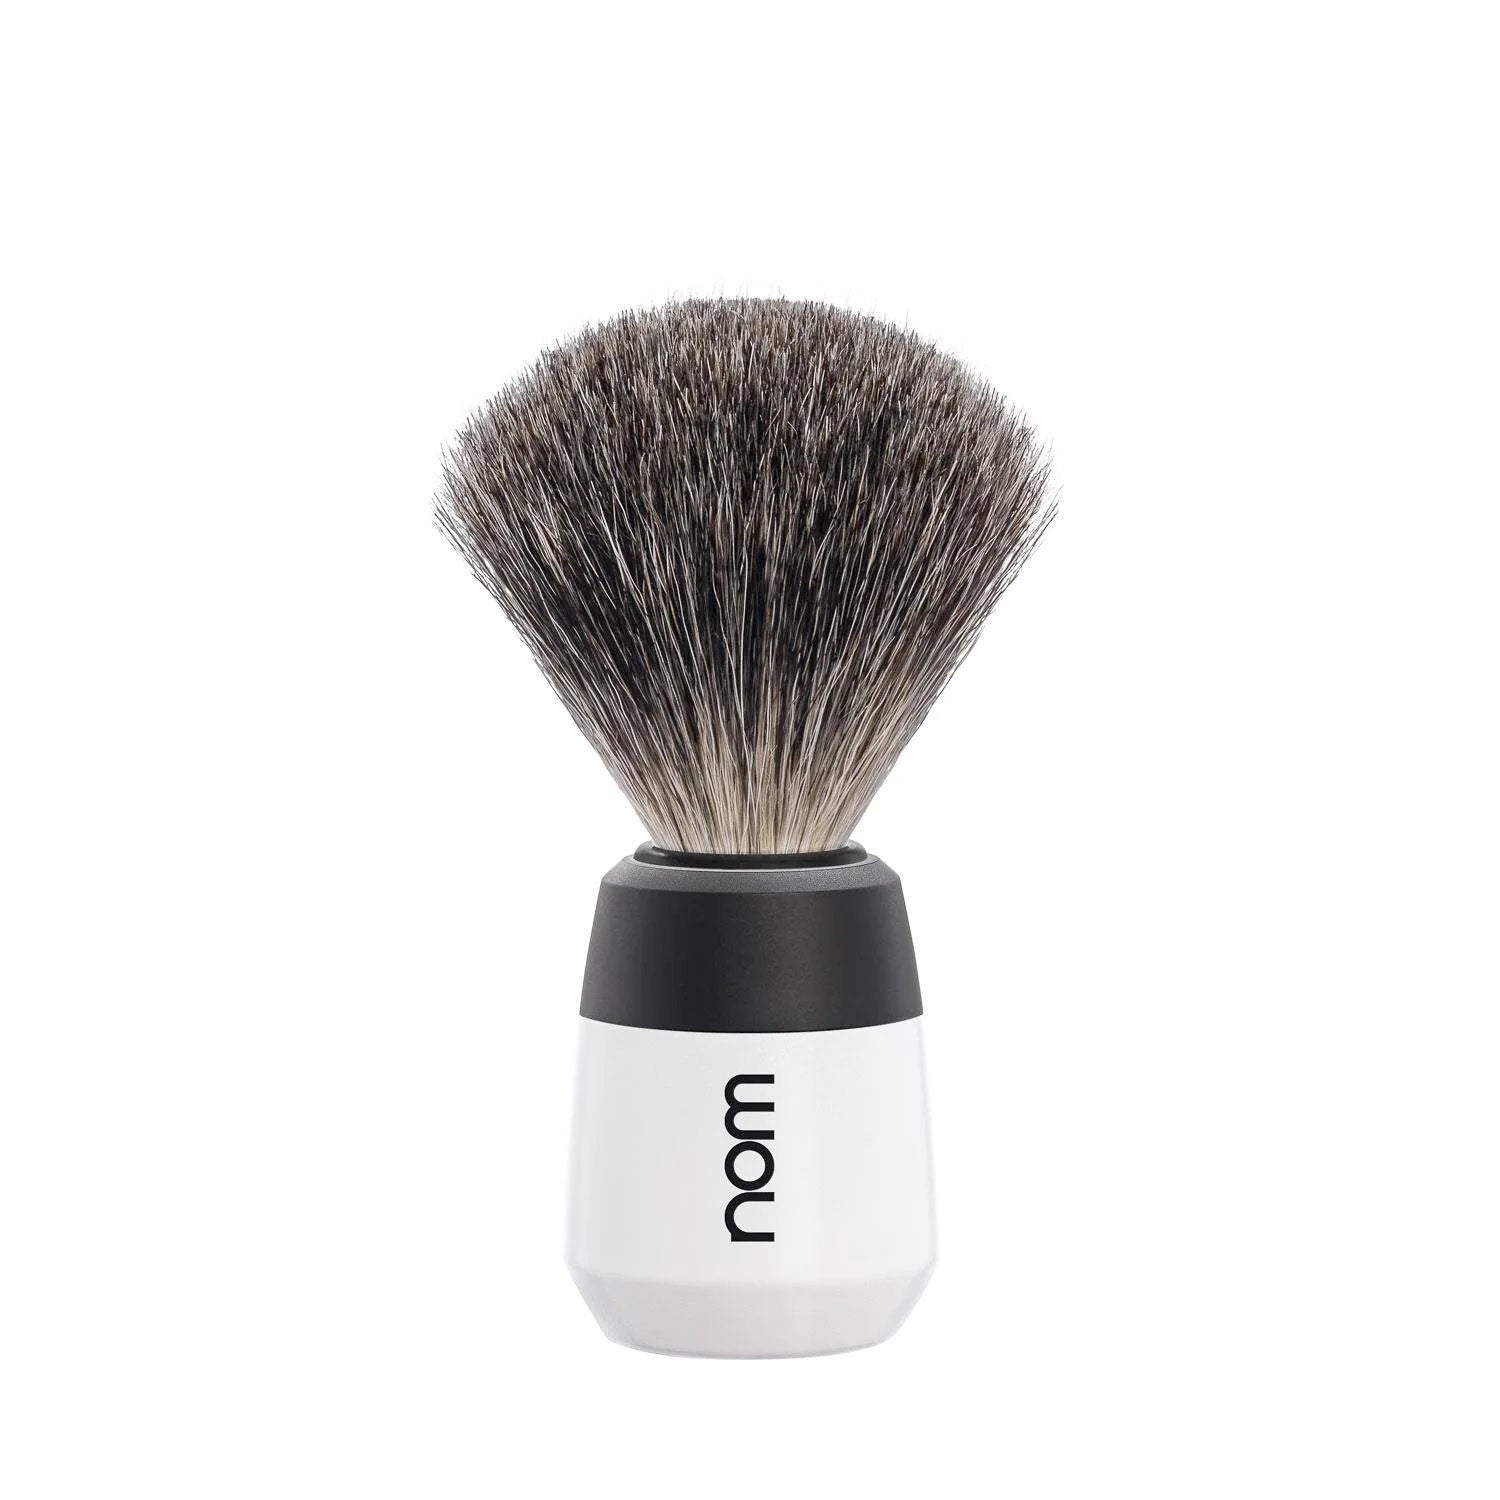 nom MAX Pure Badger Shaving Brush in White